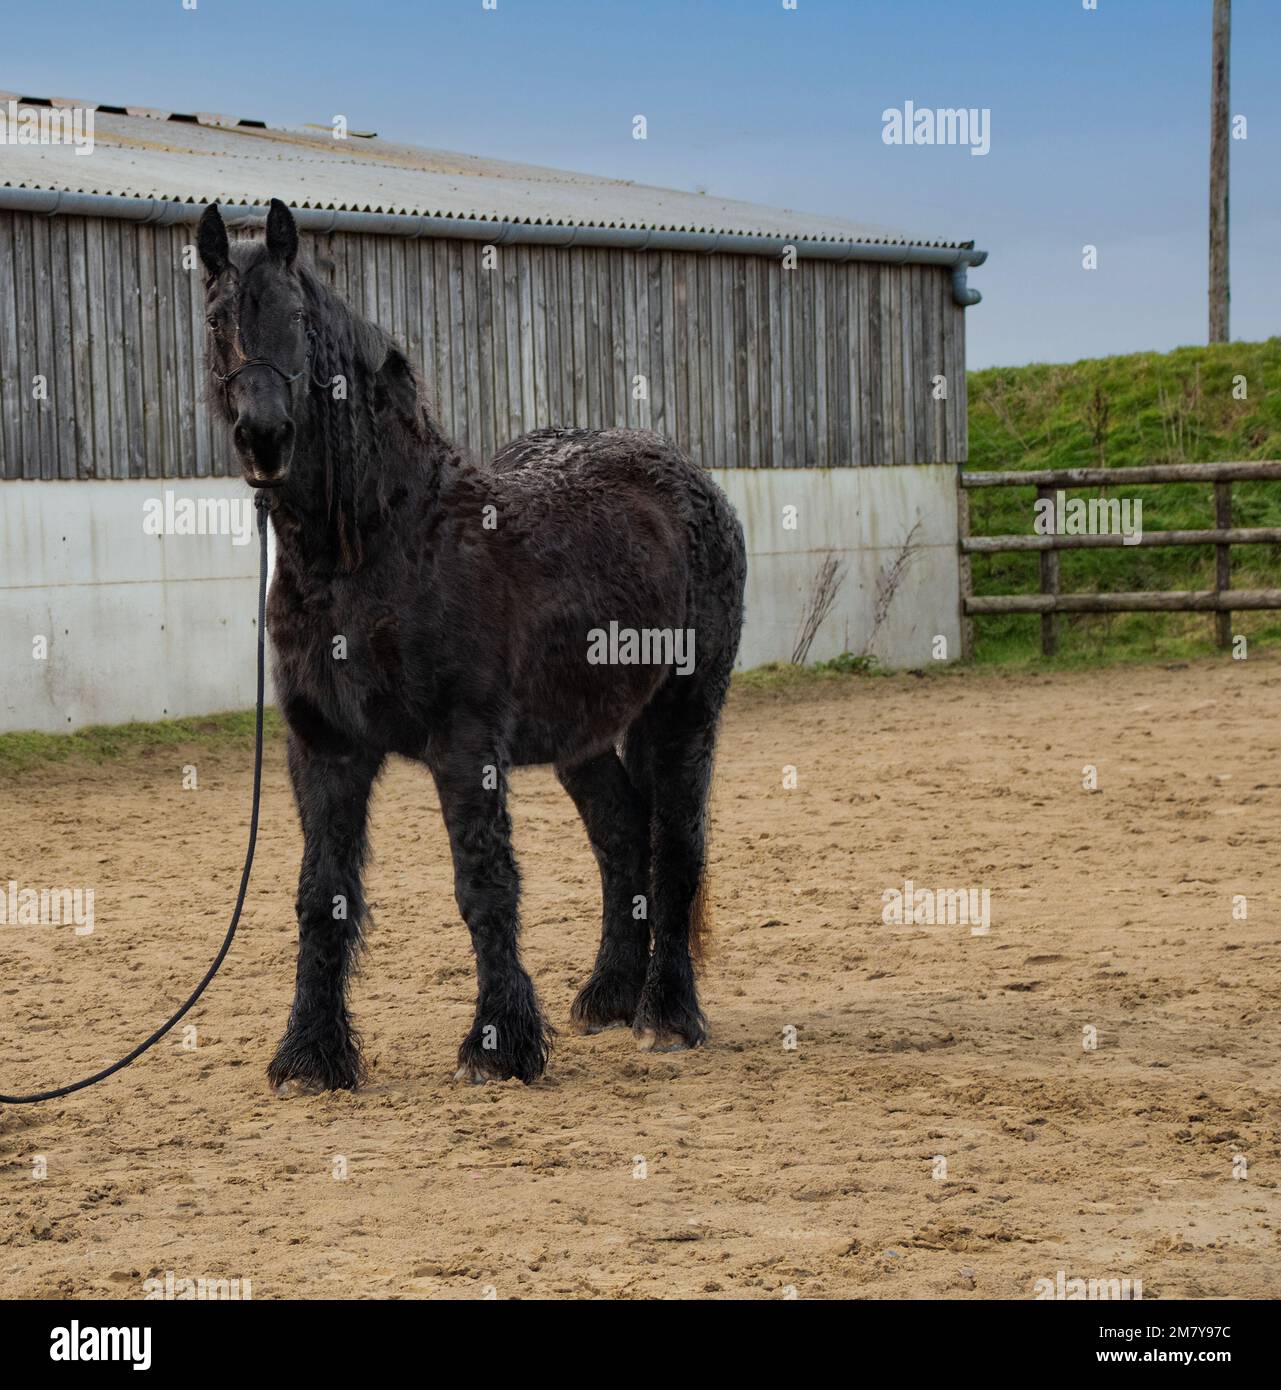 Friesisches Pferd mit dickem Wintermantel, das in der Sandschule in der Sandarena steht Stockfoto